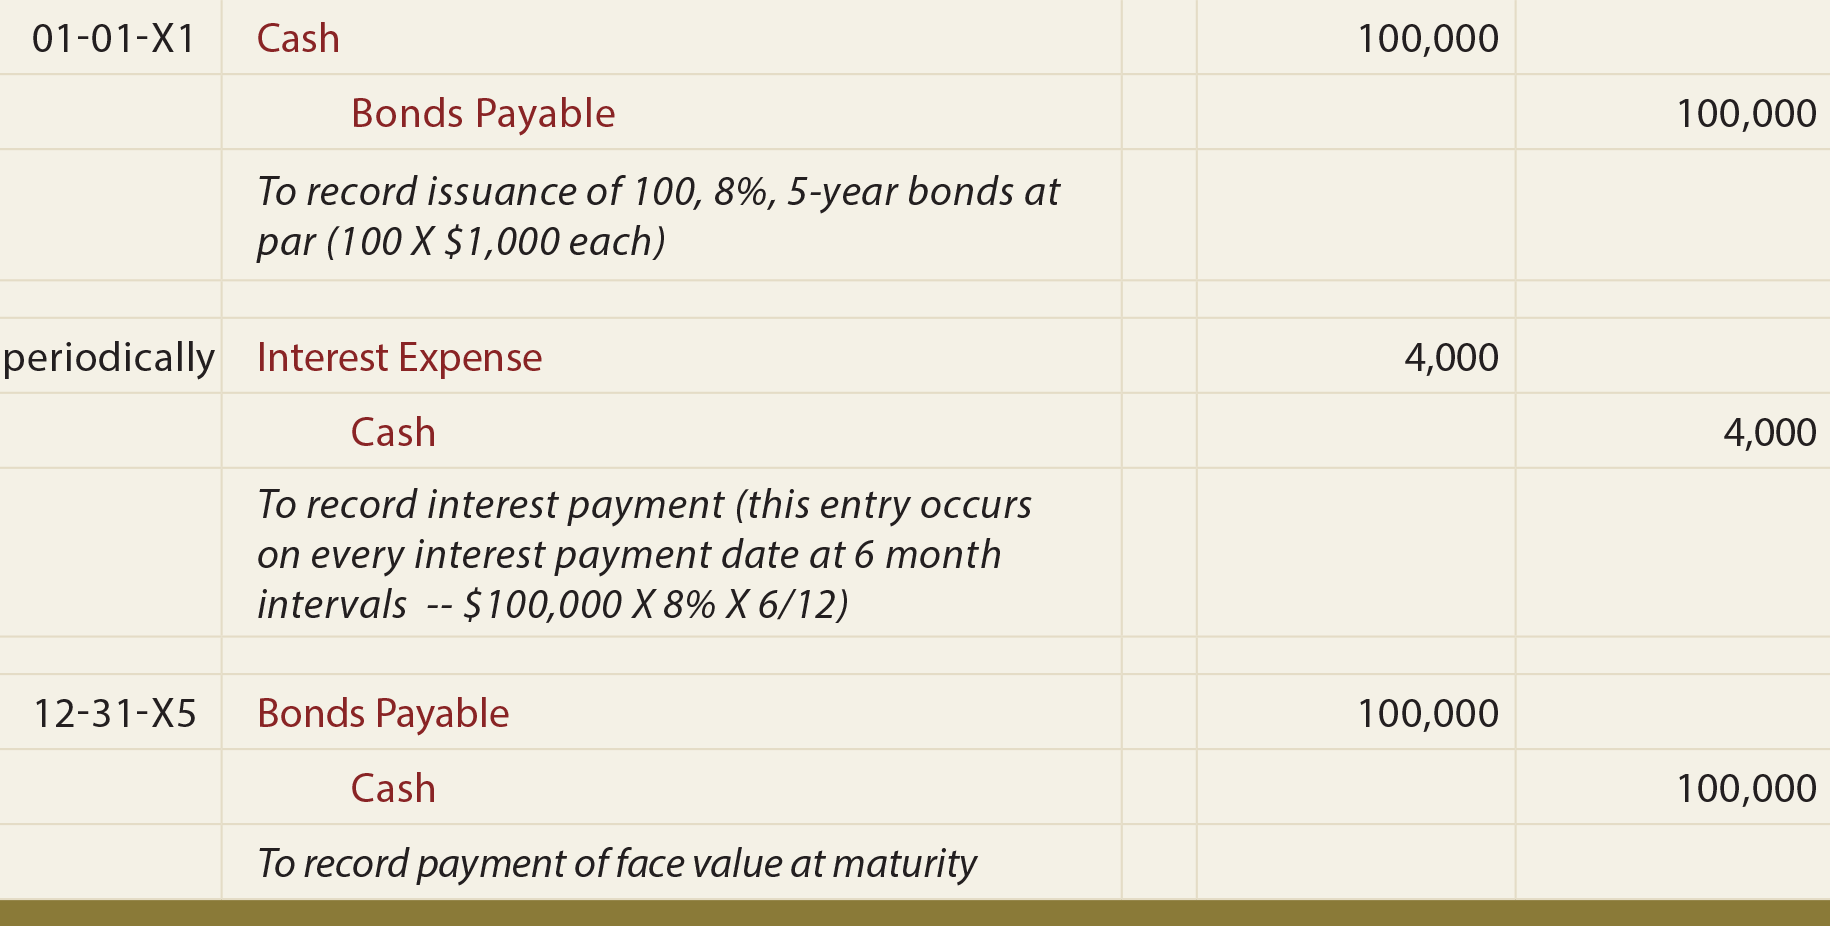 Bonds Payable at Par General Journal Entries - Bonds payable at par